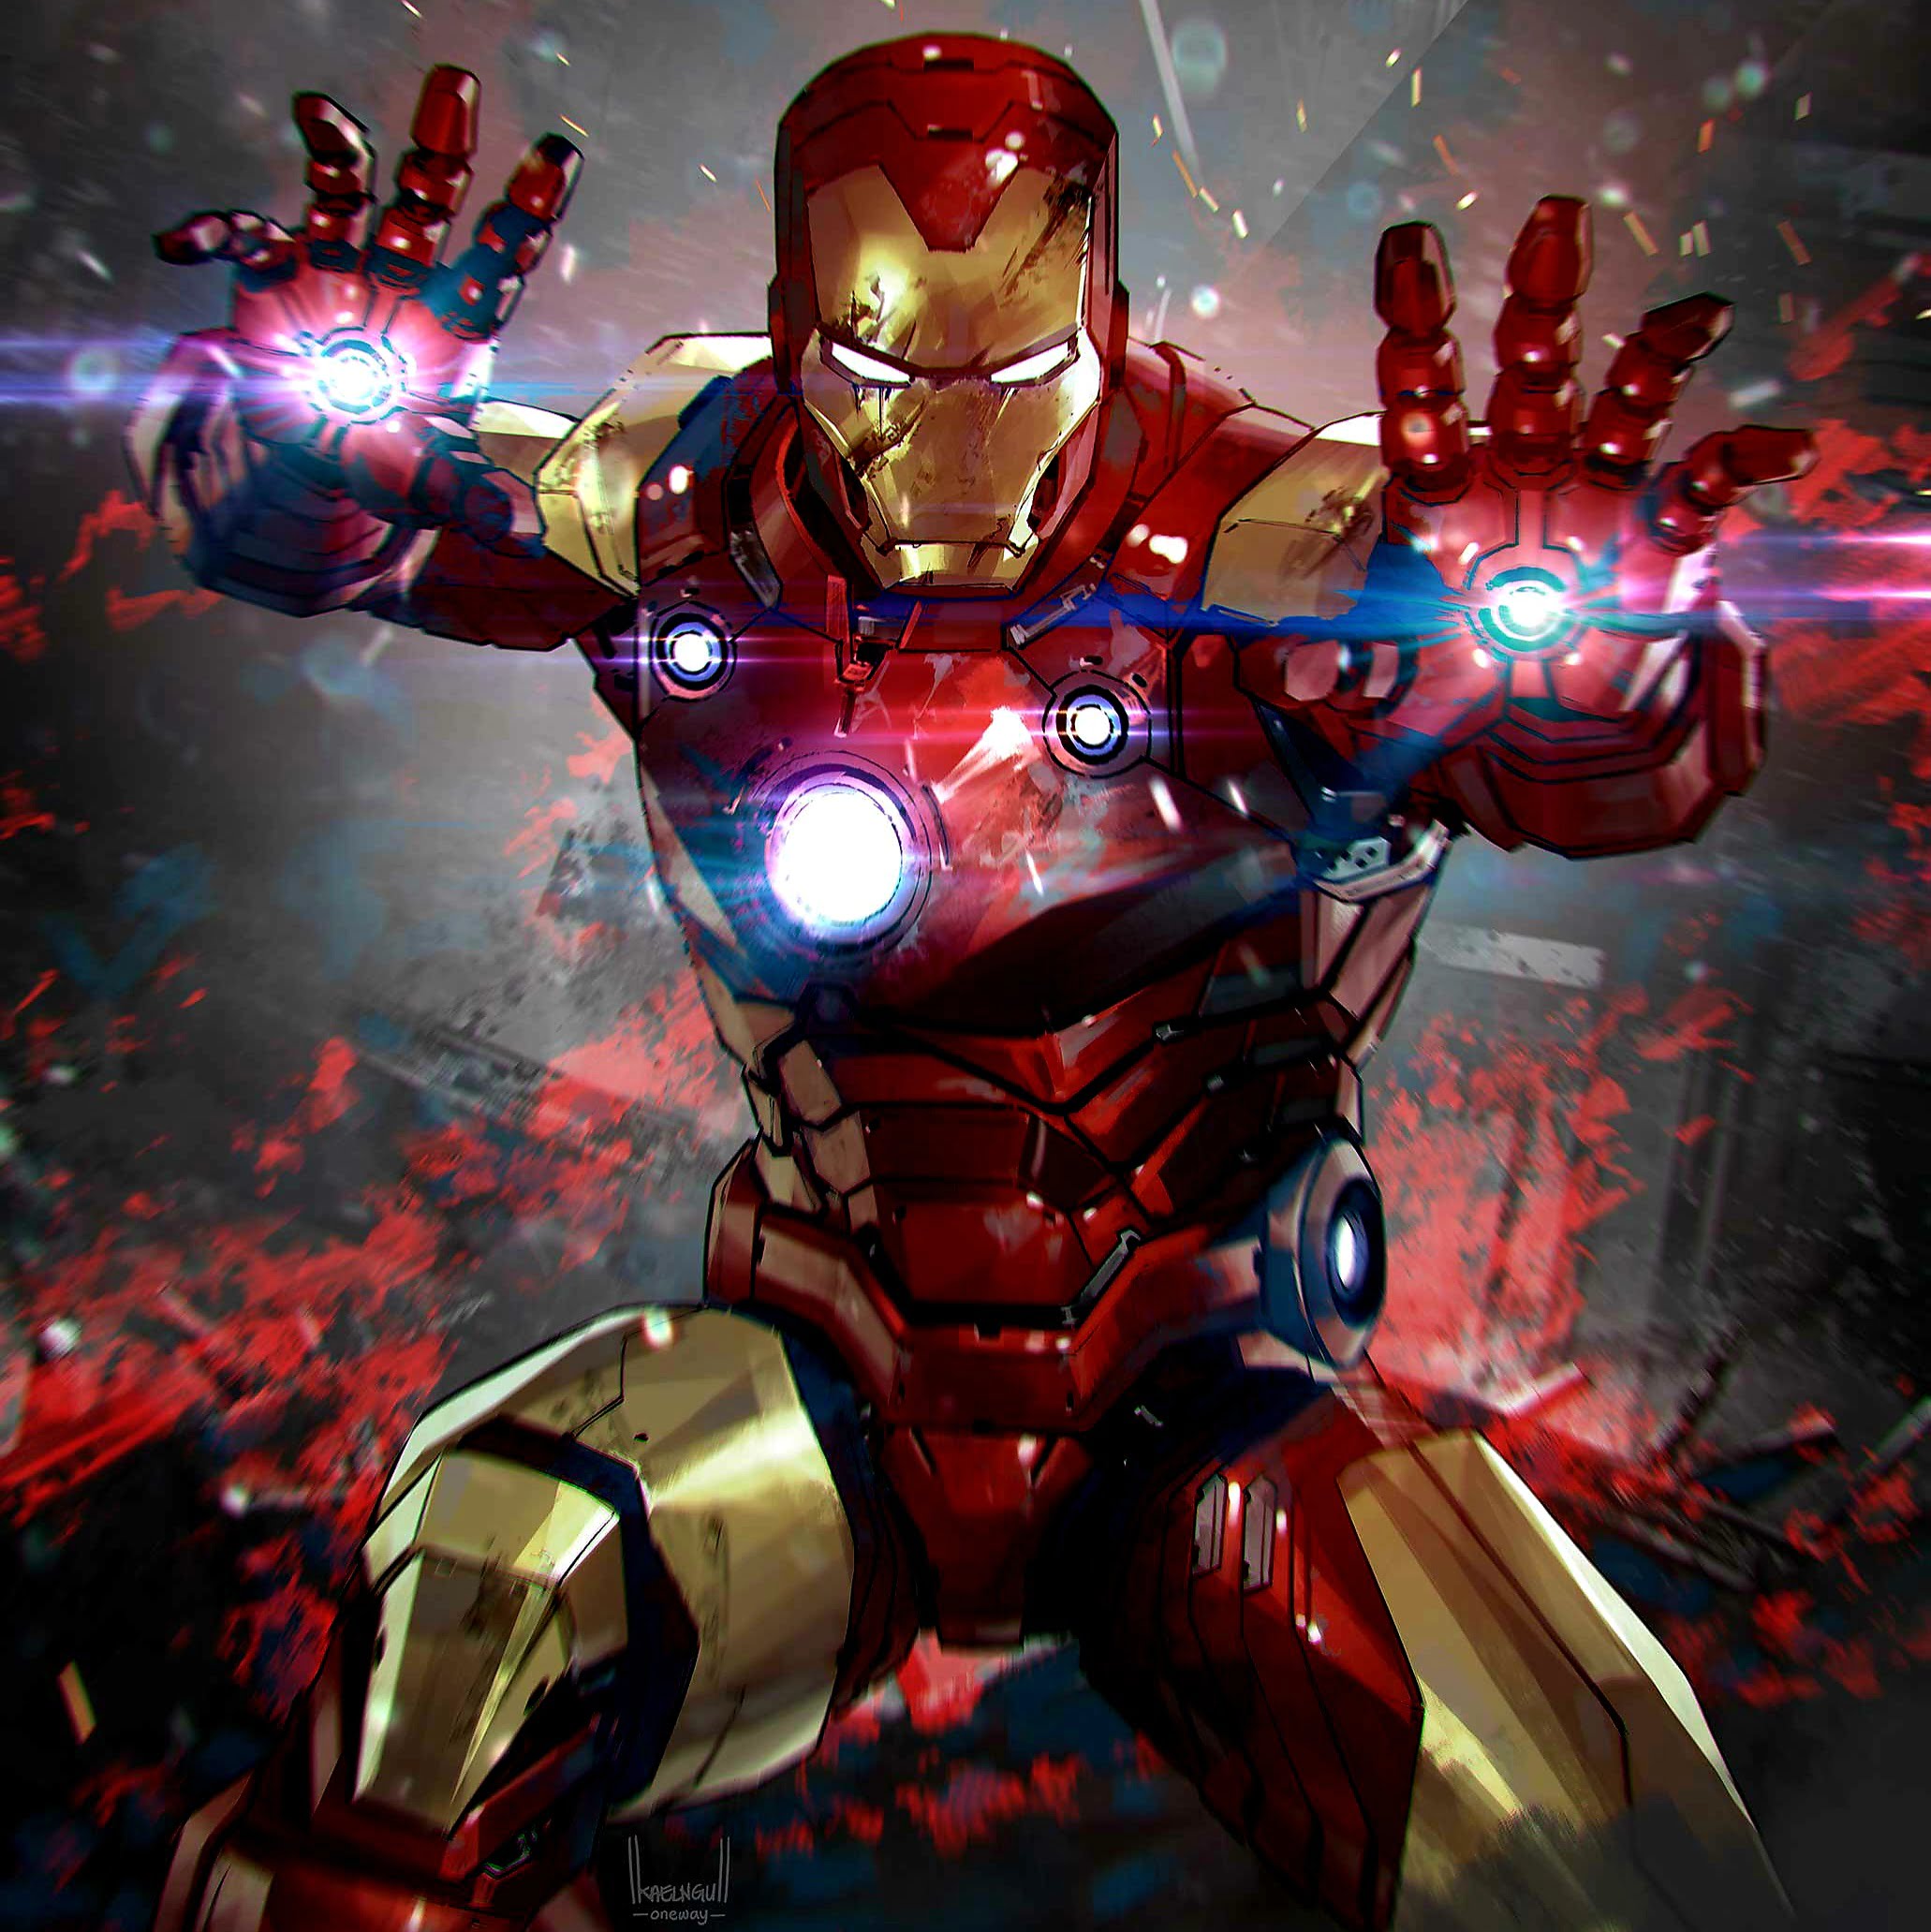 Tony Stark aka iron man from marvel via 360 Magazine